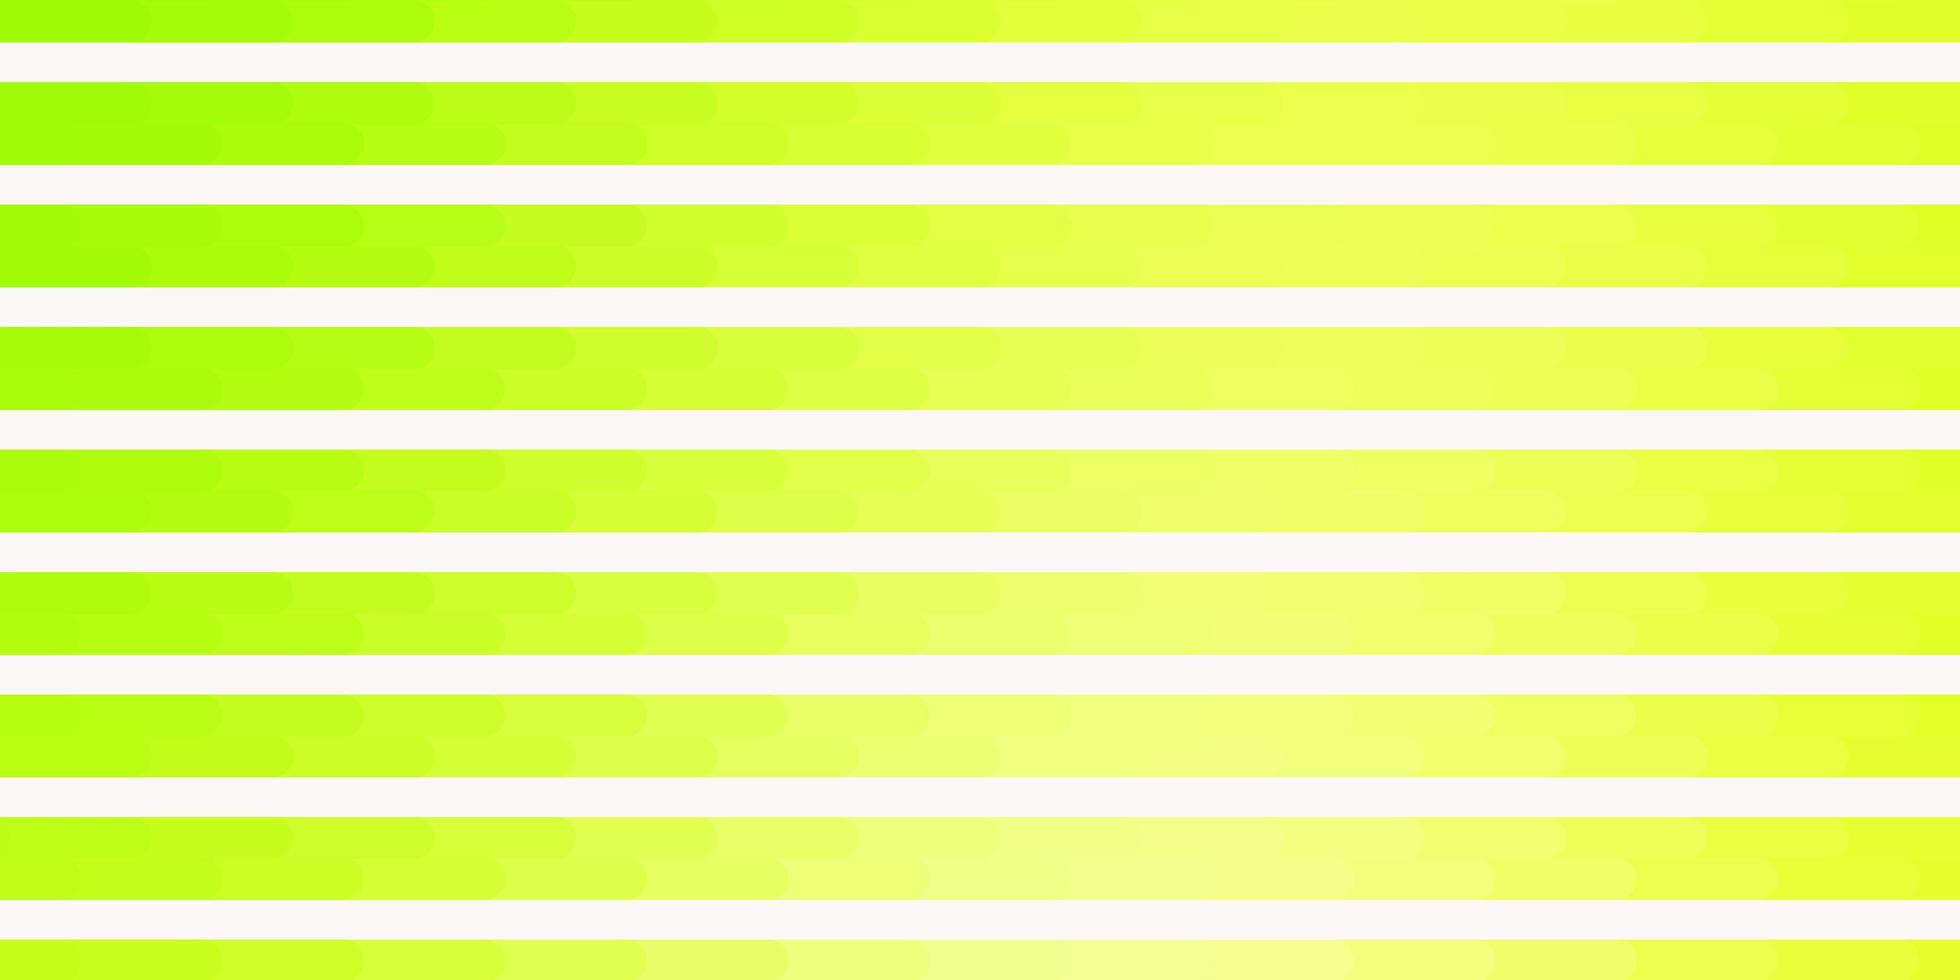 ljusgrönt, gult vektormönster med linjer. vektor